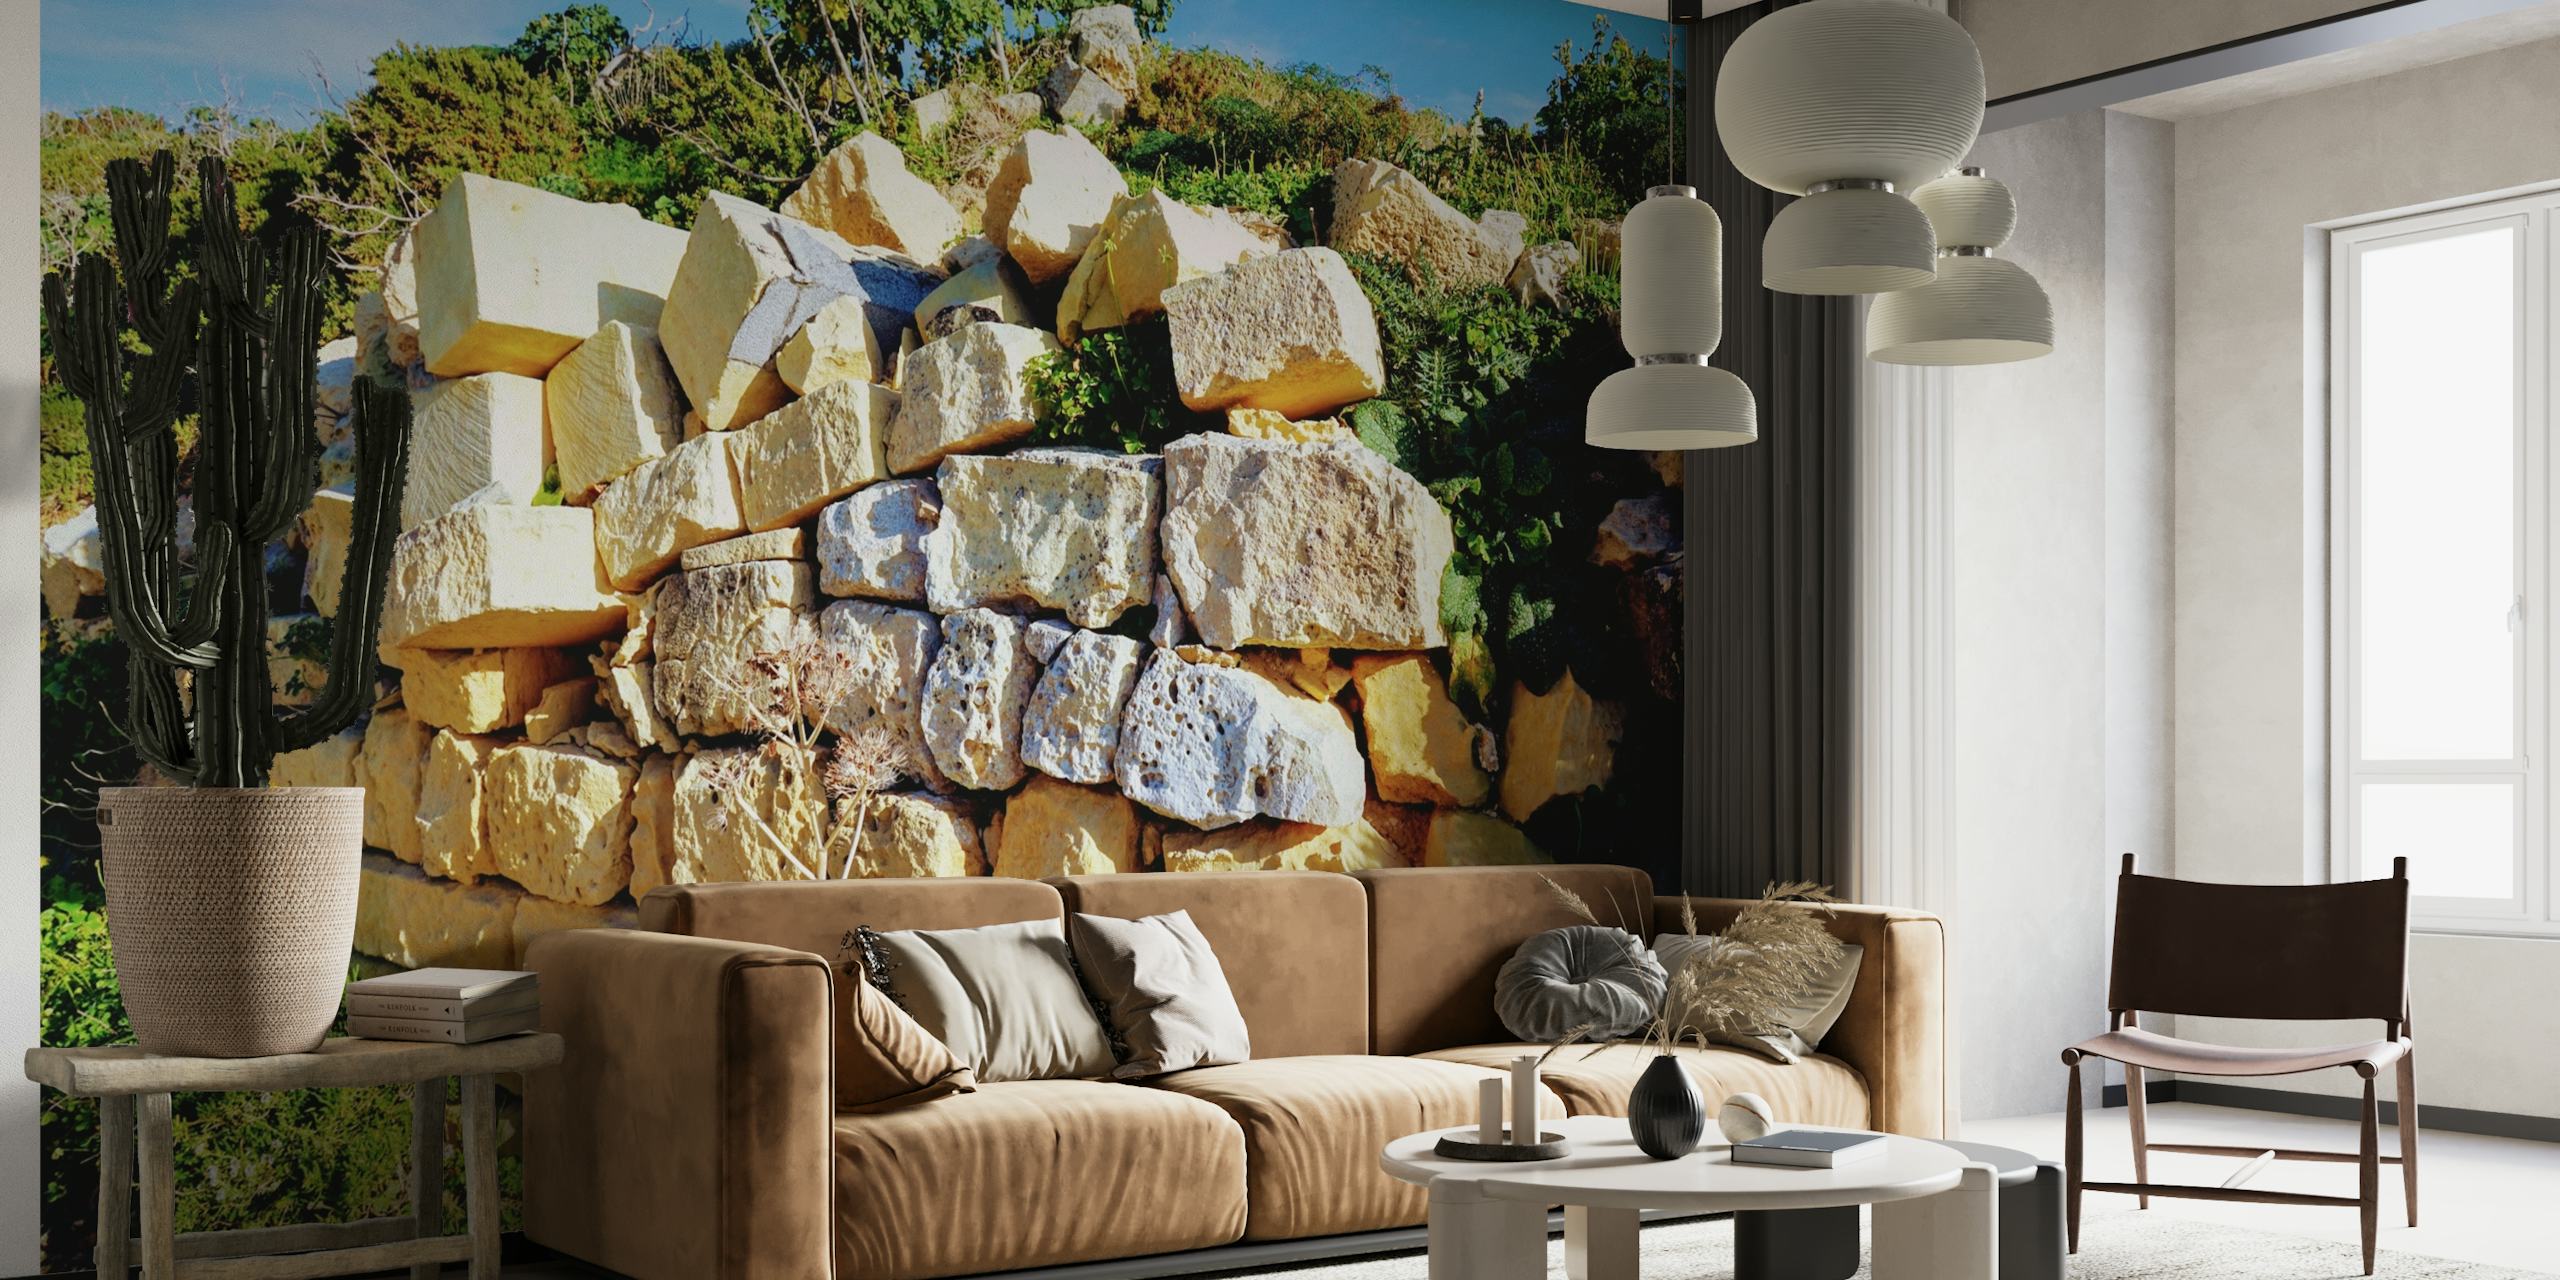 Il murale Sunlit Stones presenta un caldo muro di pietra dai toni dorati immerso nella luce del sole